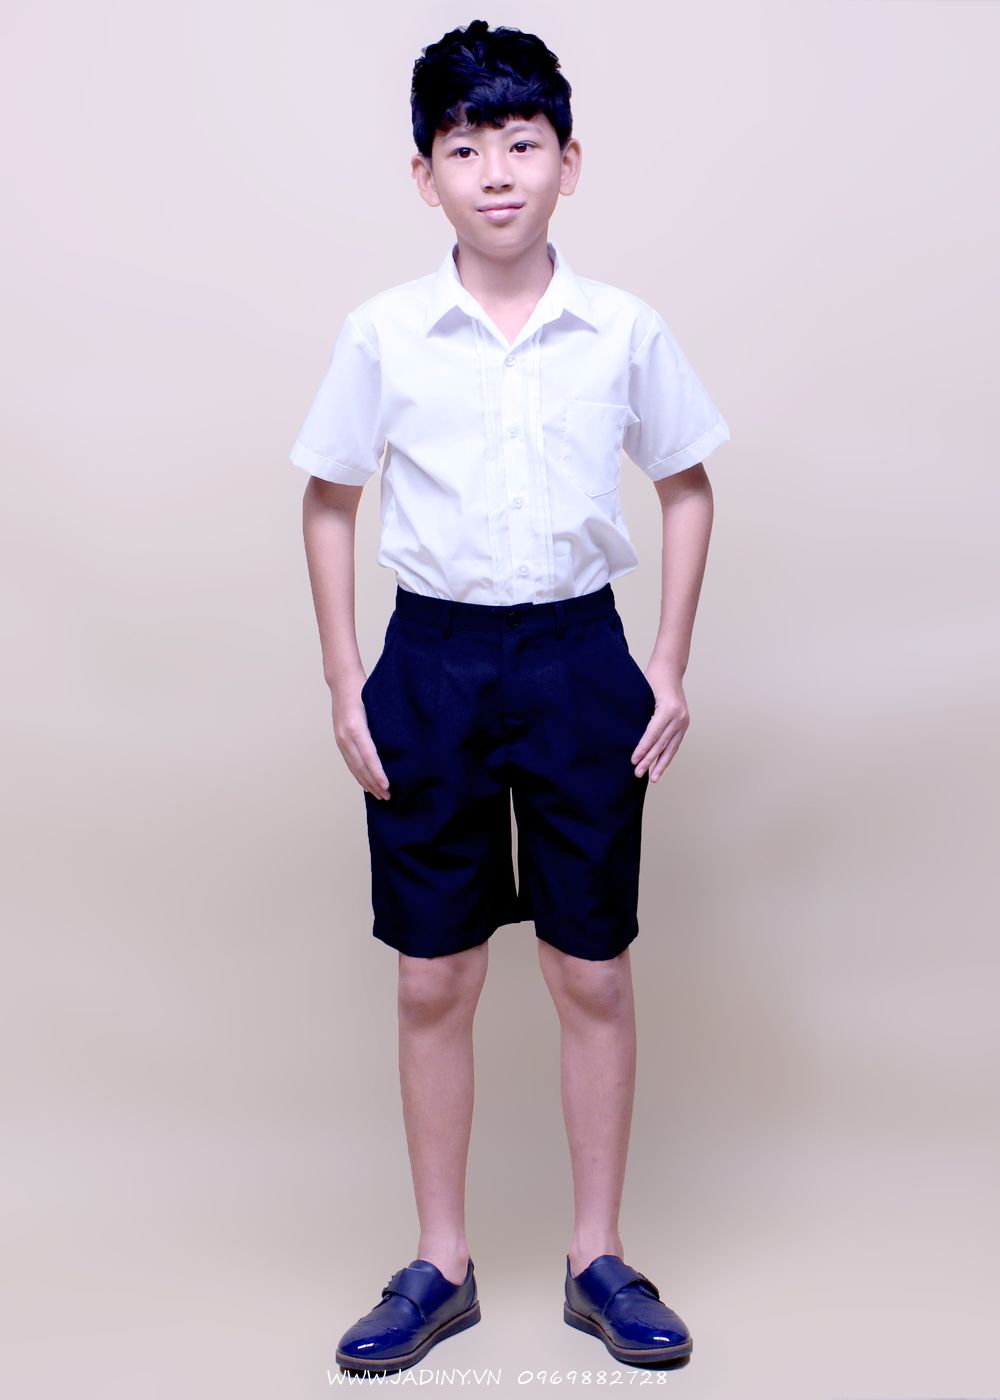 Quần ngắn đồng phục học sinh bé trai có khóa kéo, quần ngắn đi học tiểu học, cấp 1, lớp 1, thoải mái, thoáng mát, ít nhăn